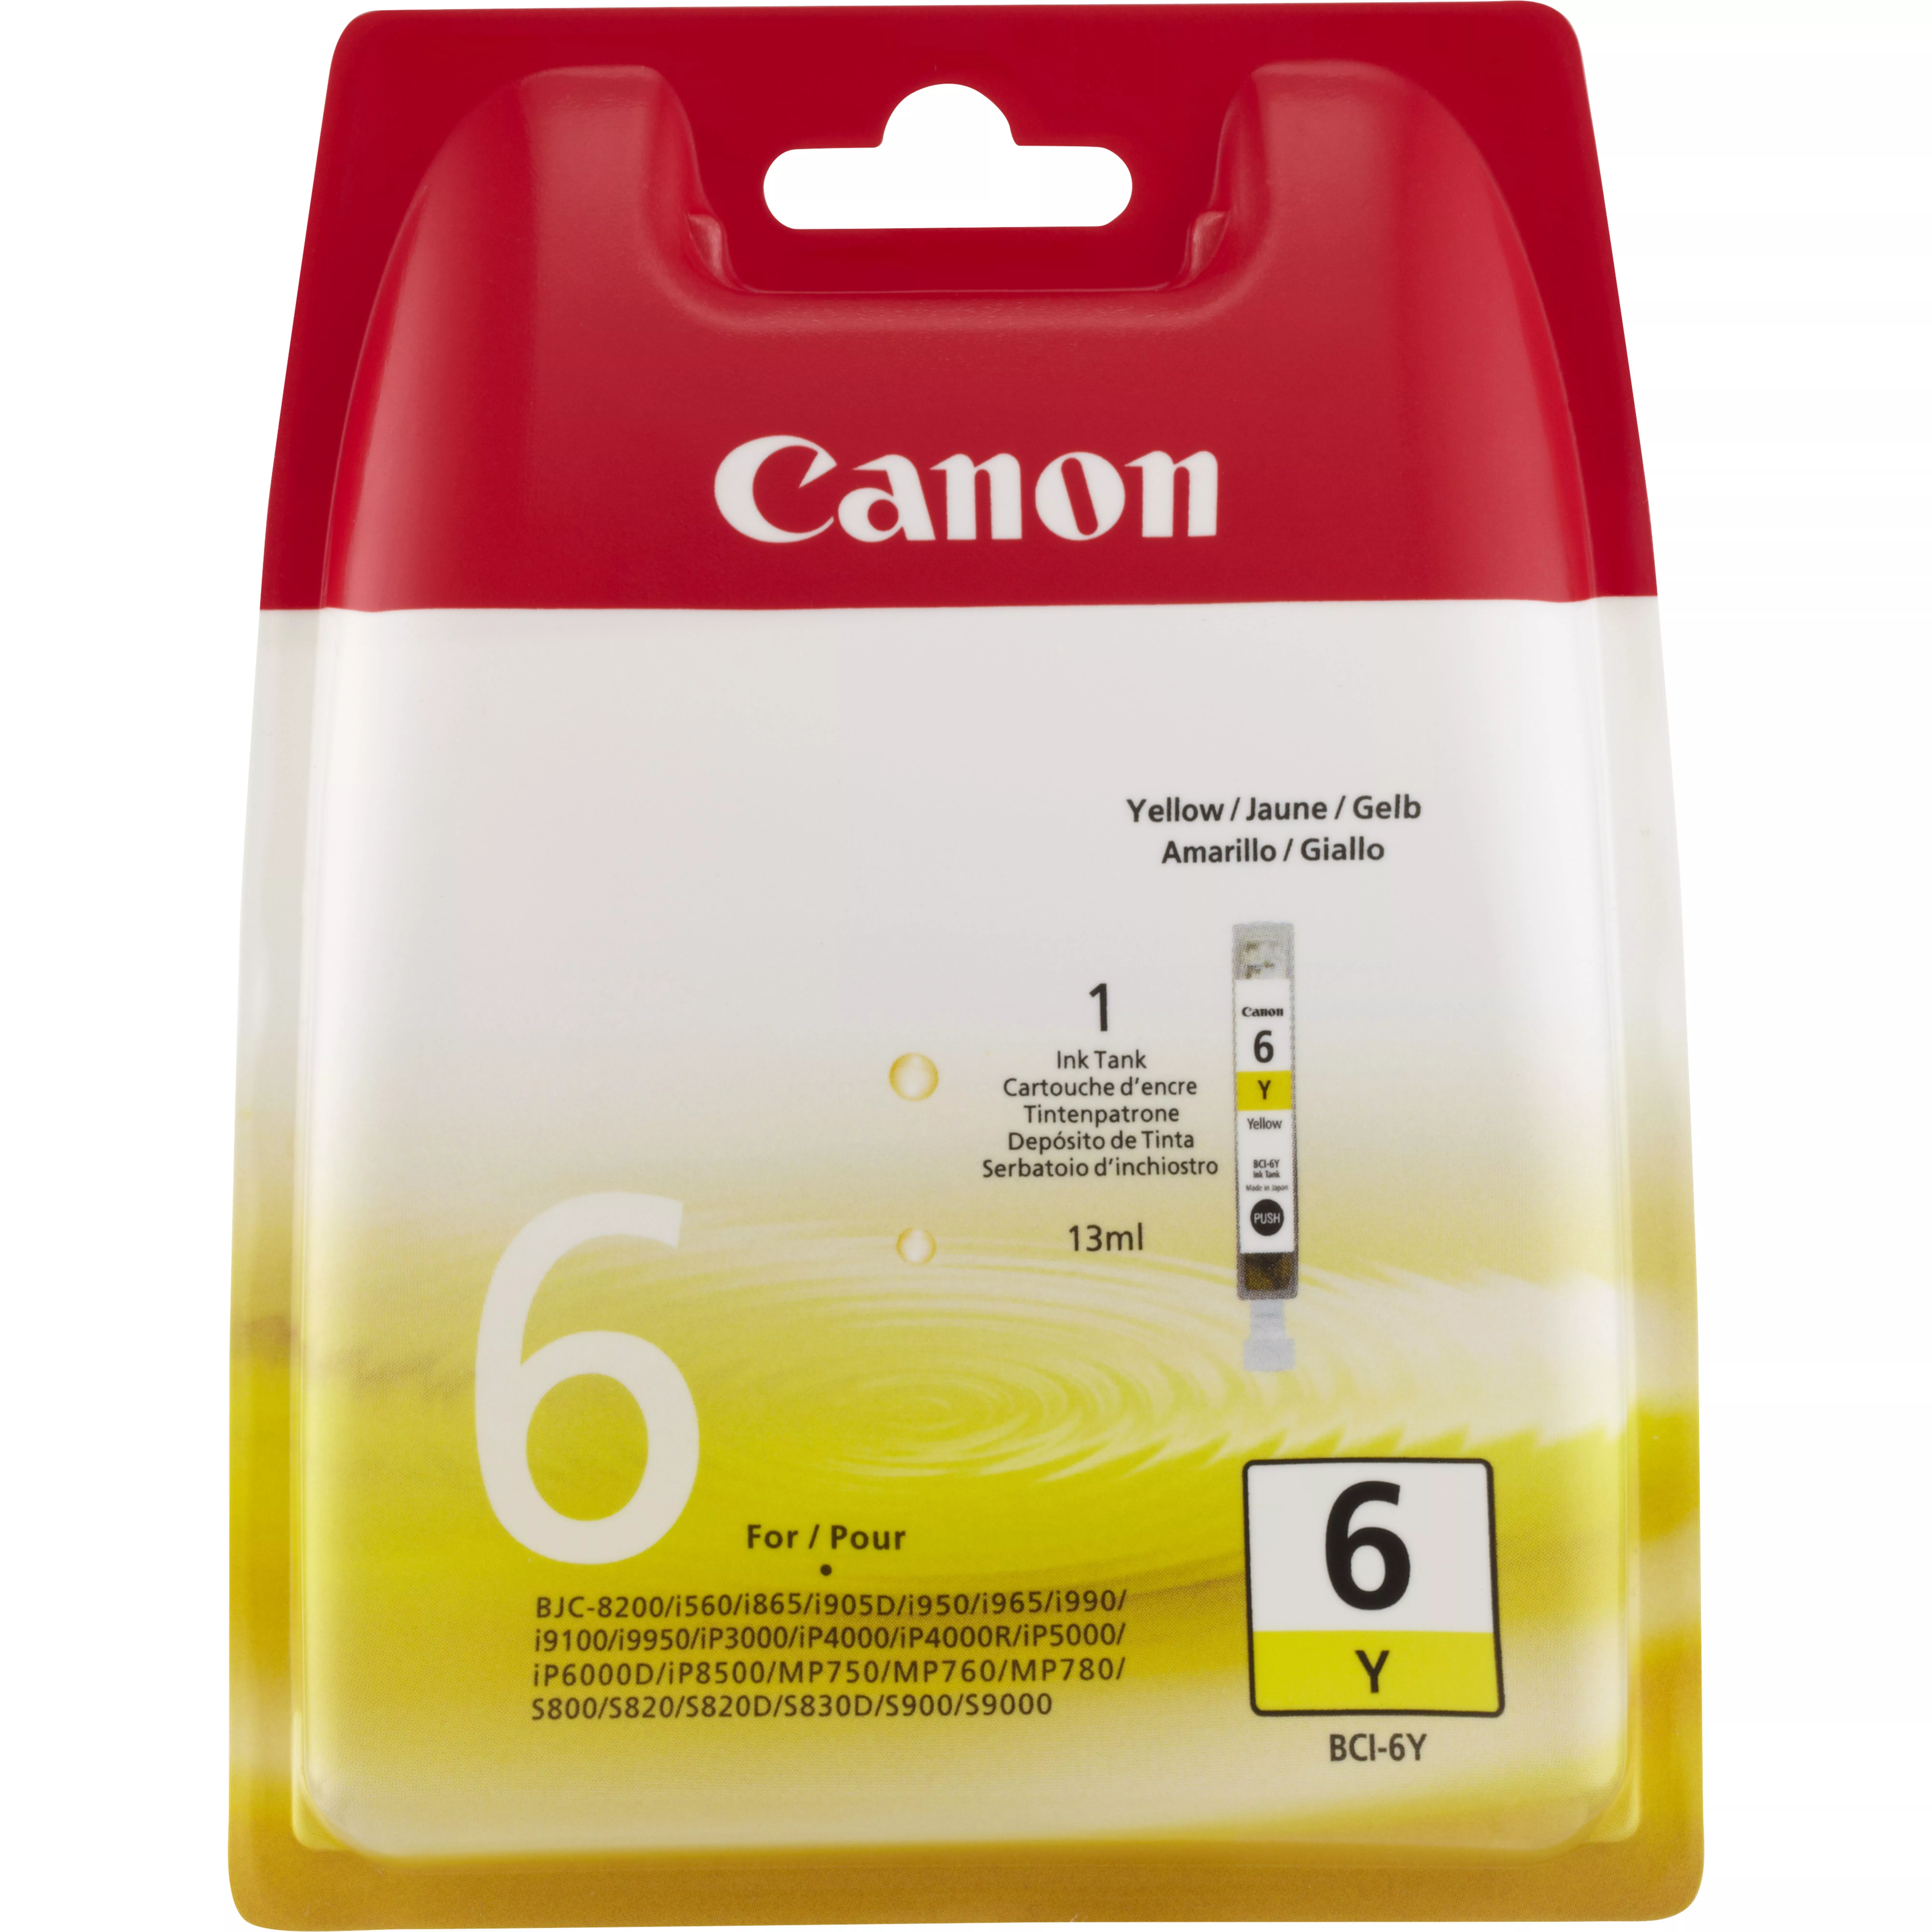 Achat Cartouches d'encre CANON BCI-6Y cartouche d encre jaune capacite standard sur hello RSE